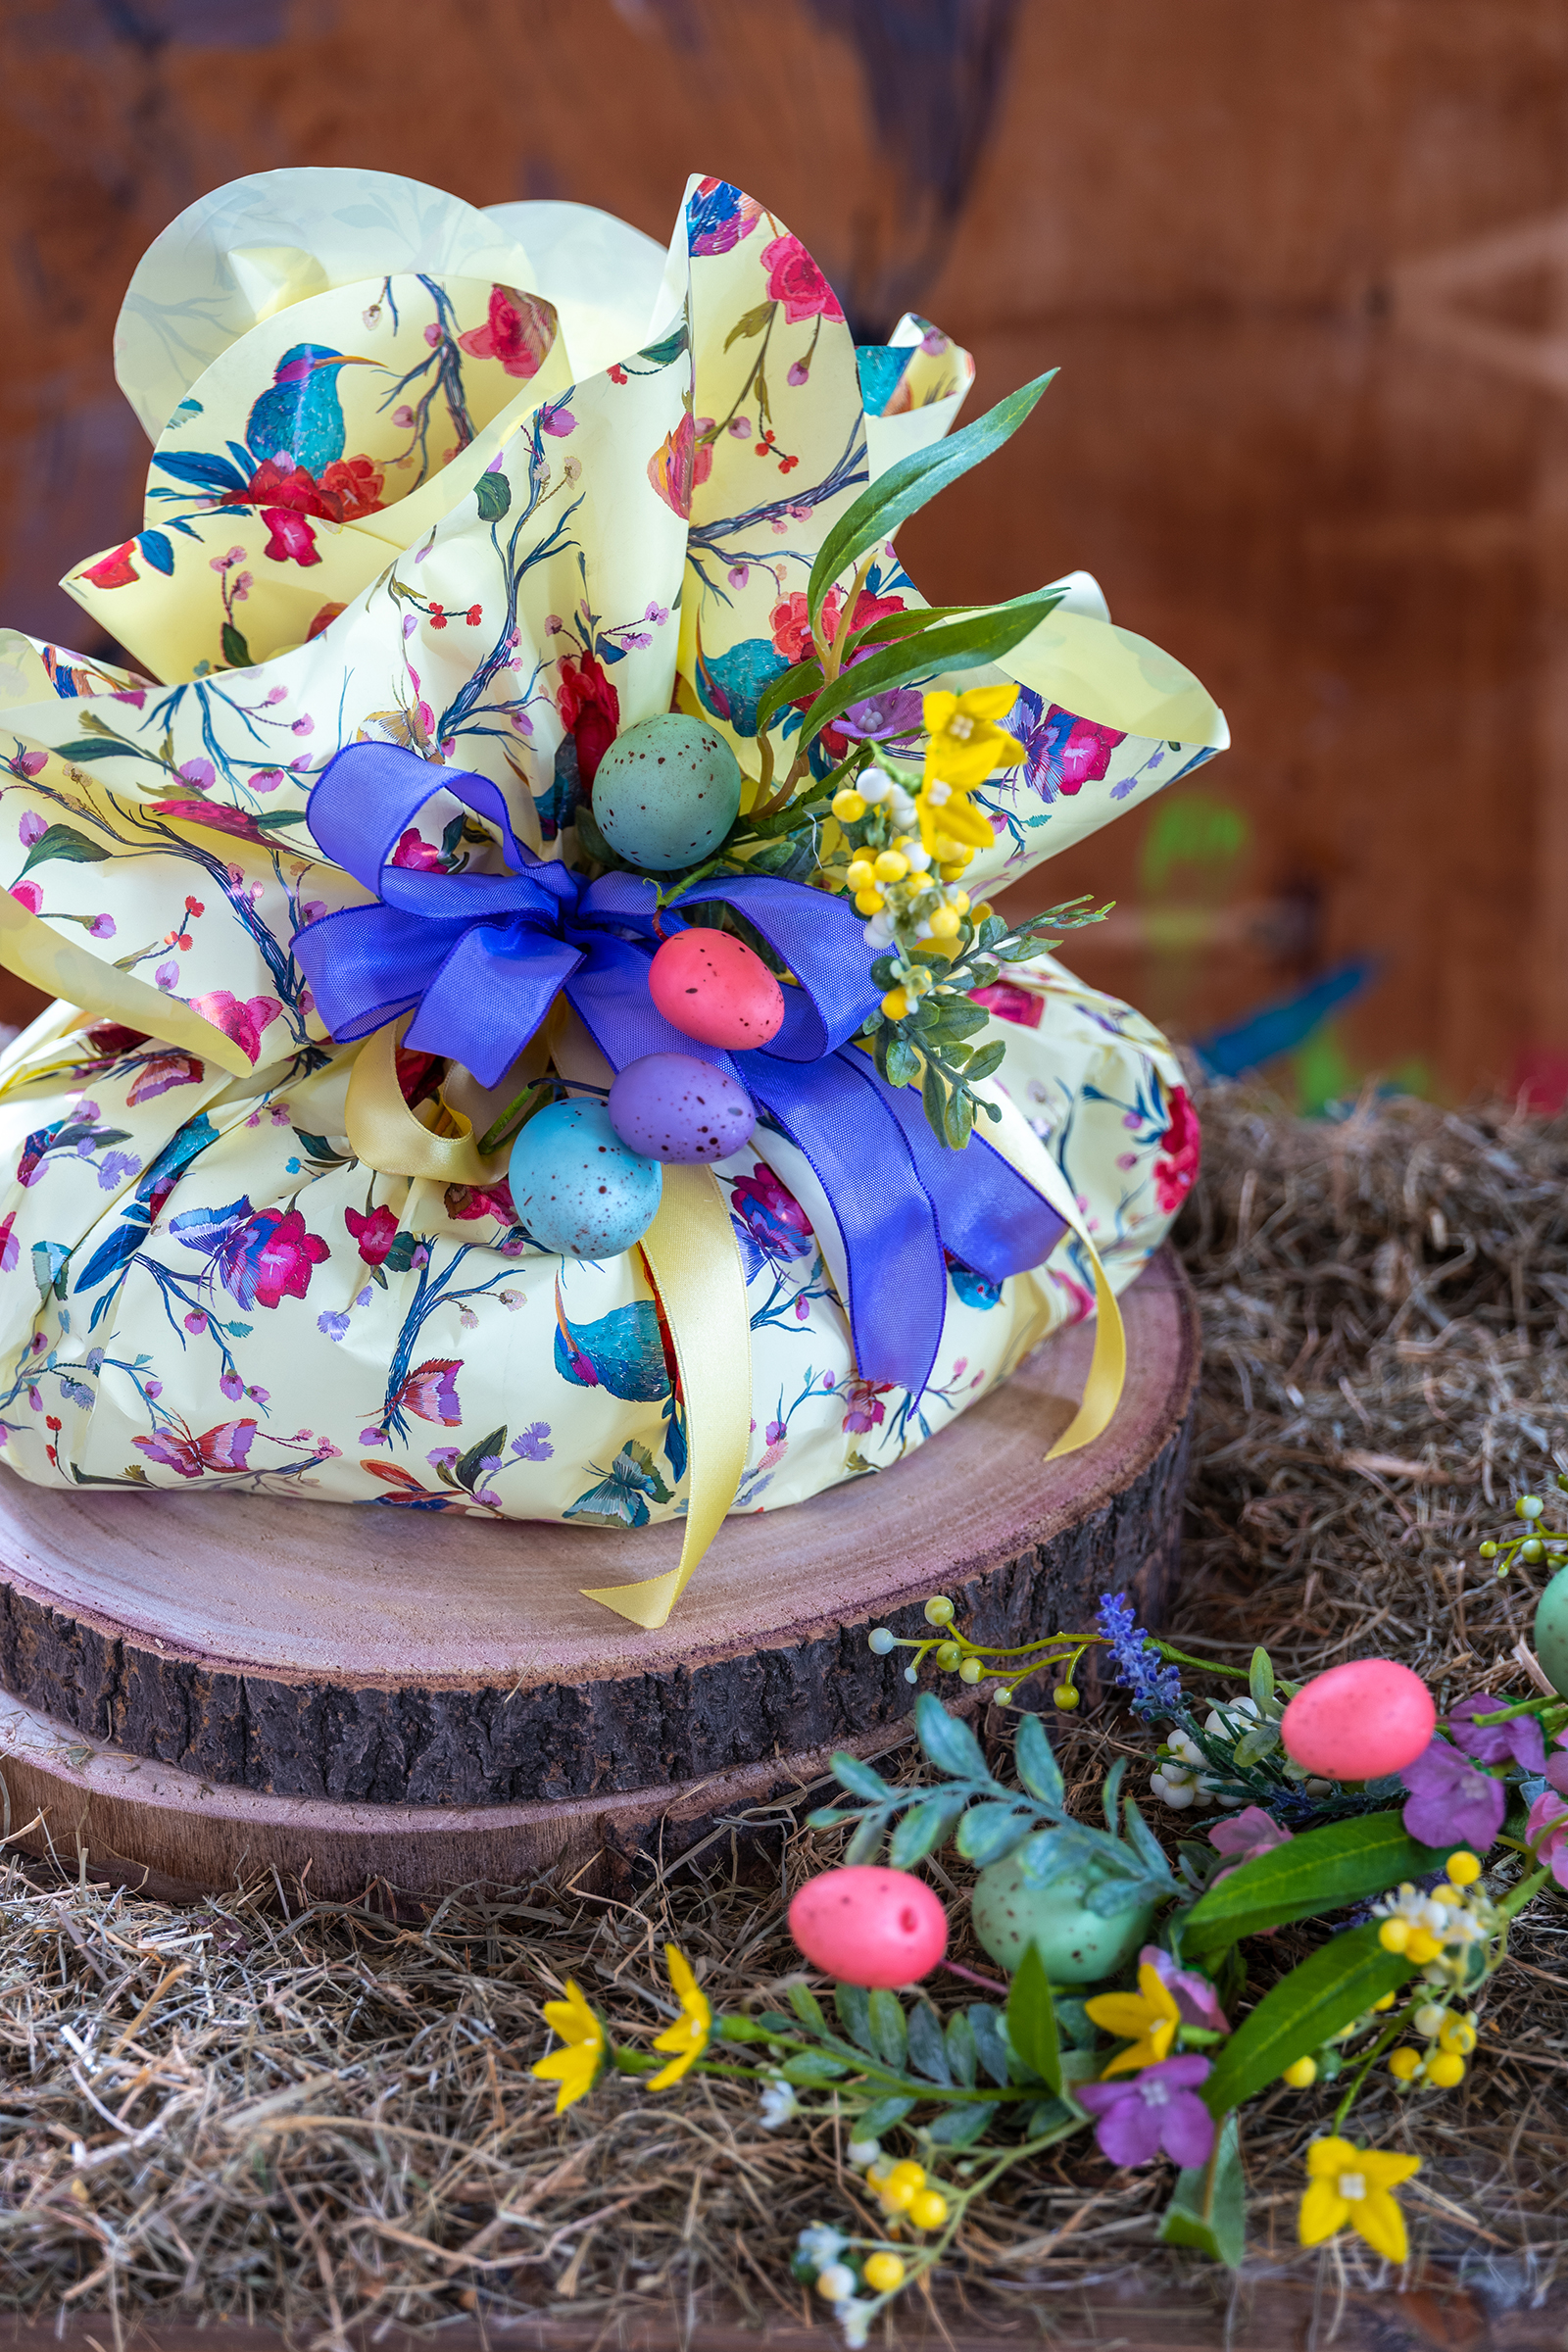 Incarti per colombe e uova di Pasqua - Catalogo di Pasqua 2022 con packaging dolciario, oggettistica e complementi d'arredo